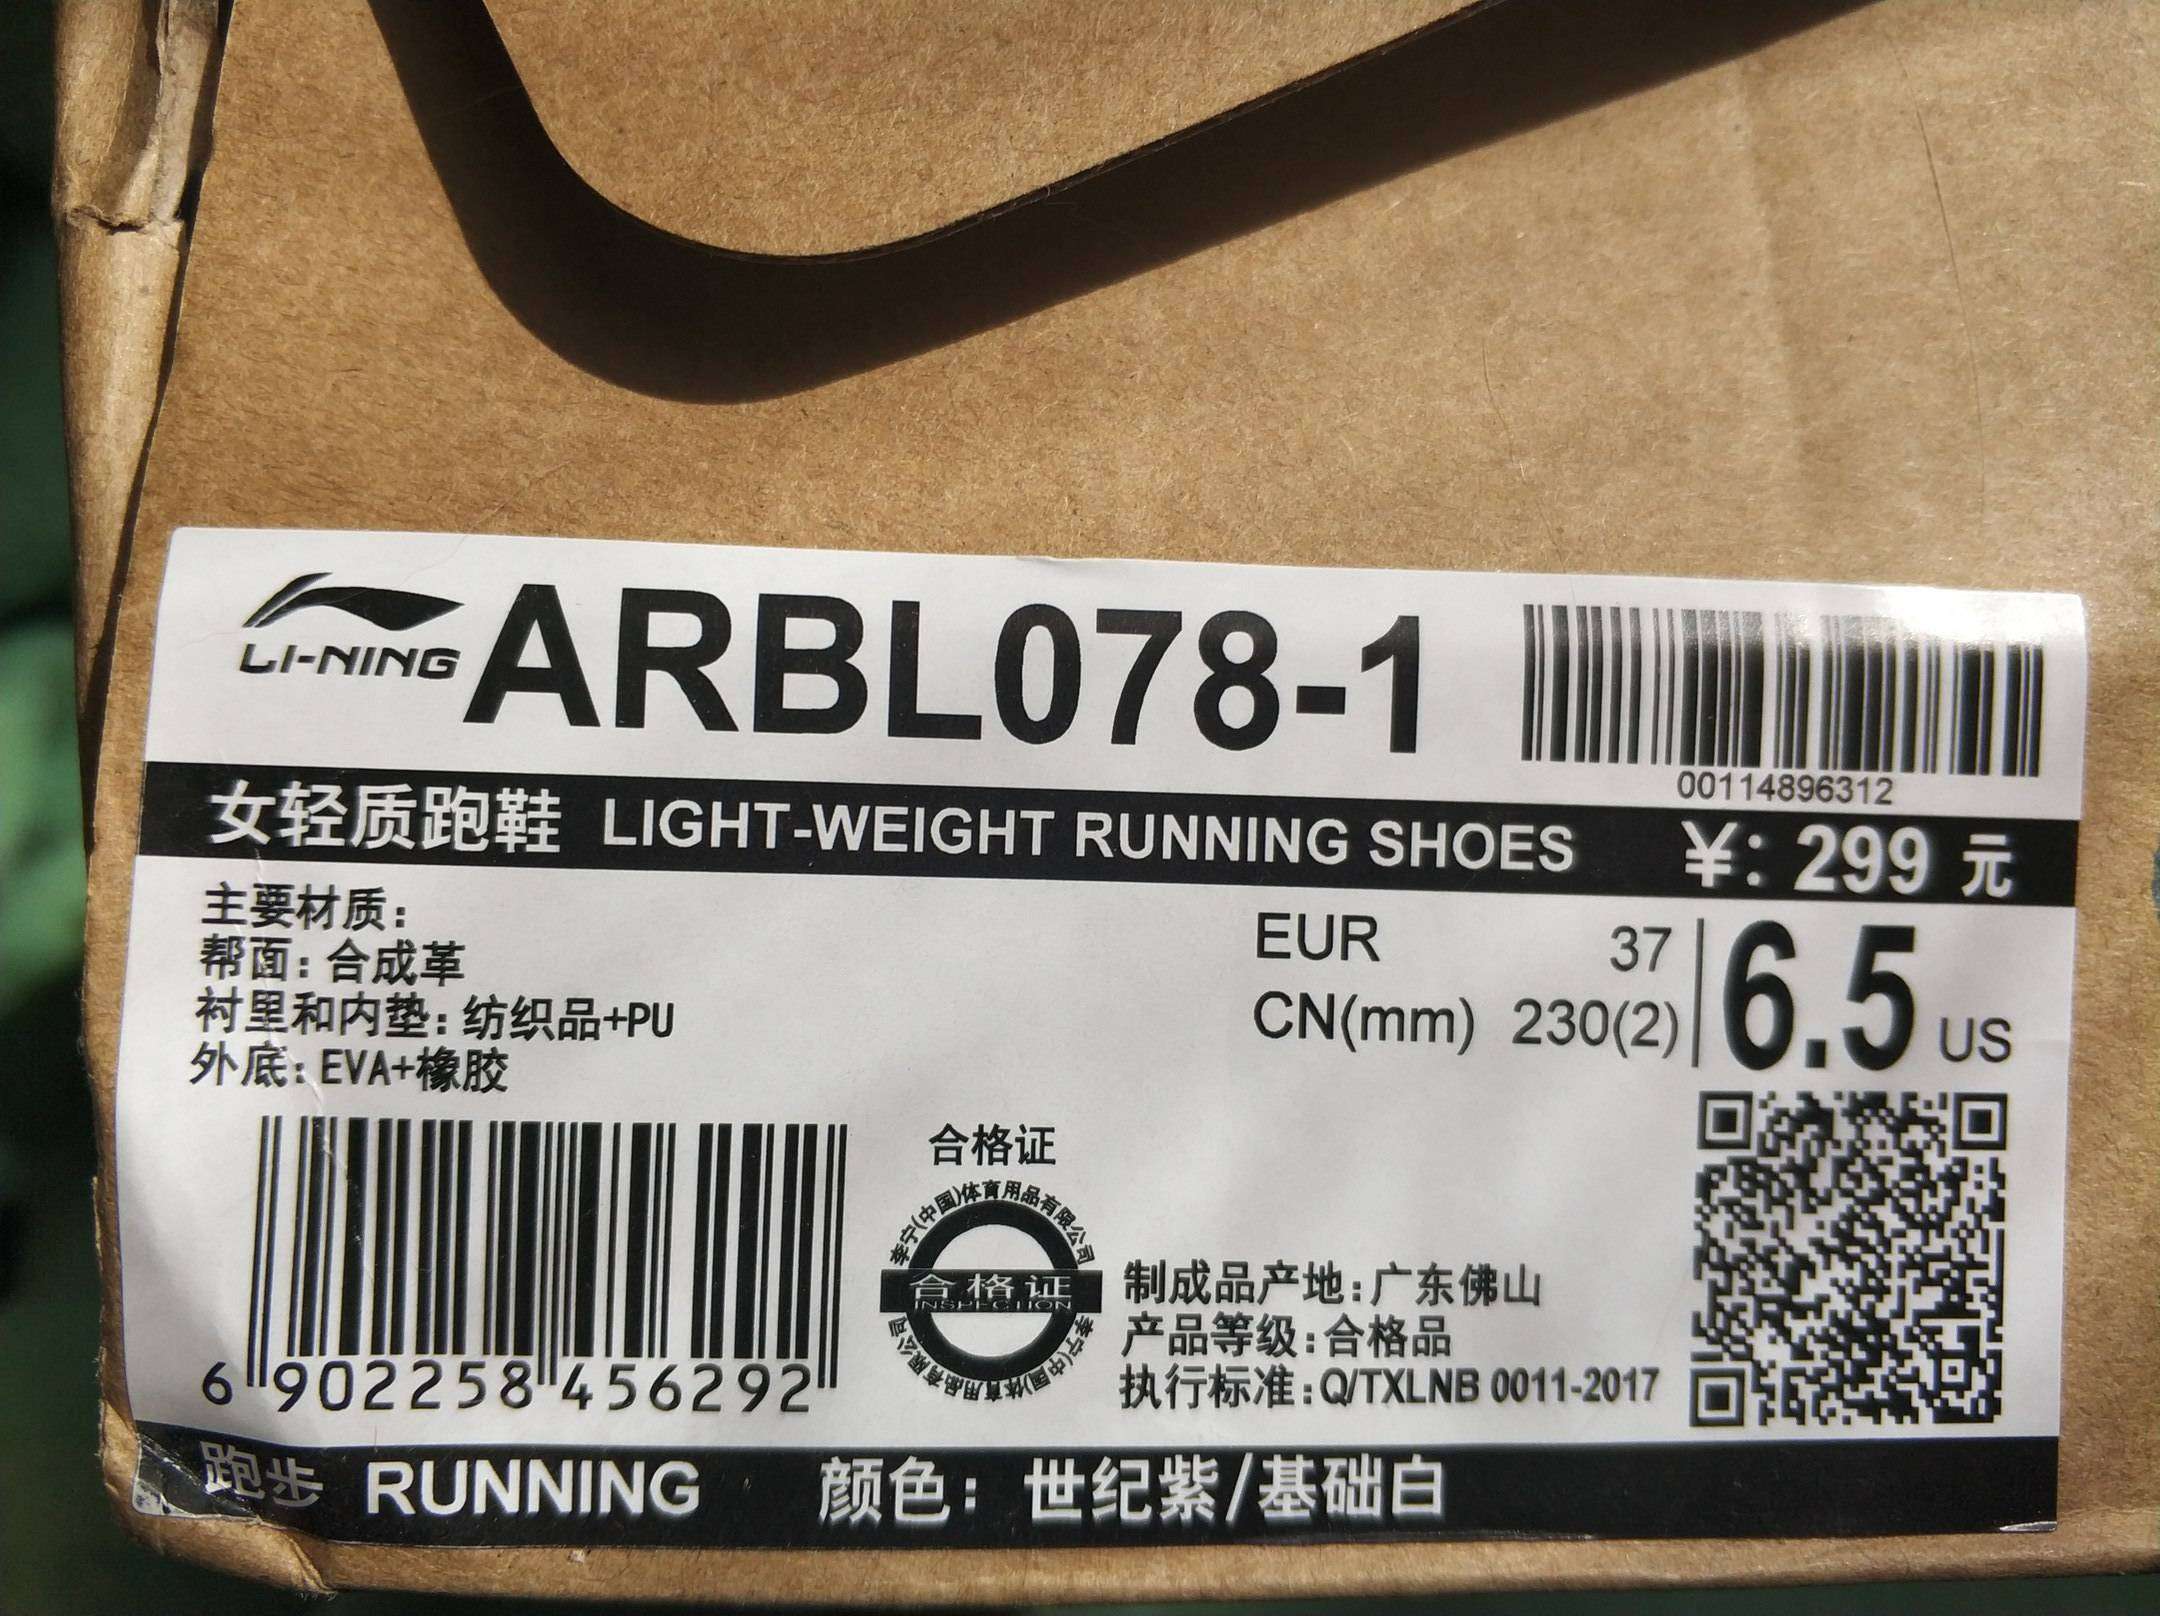 TaoBao: Li-ning arbl078-1 - классные женские кроссовки. Достать, обуть, радоваться.